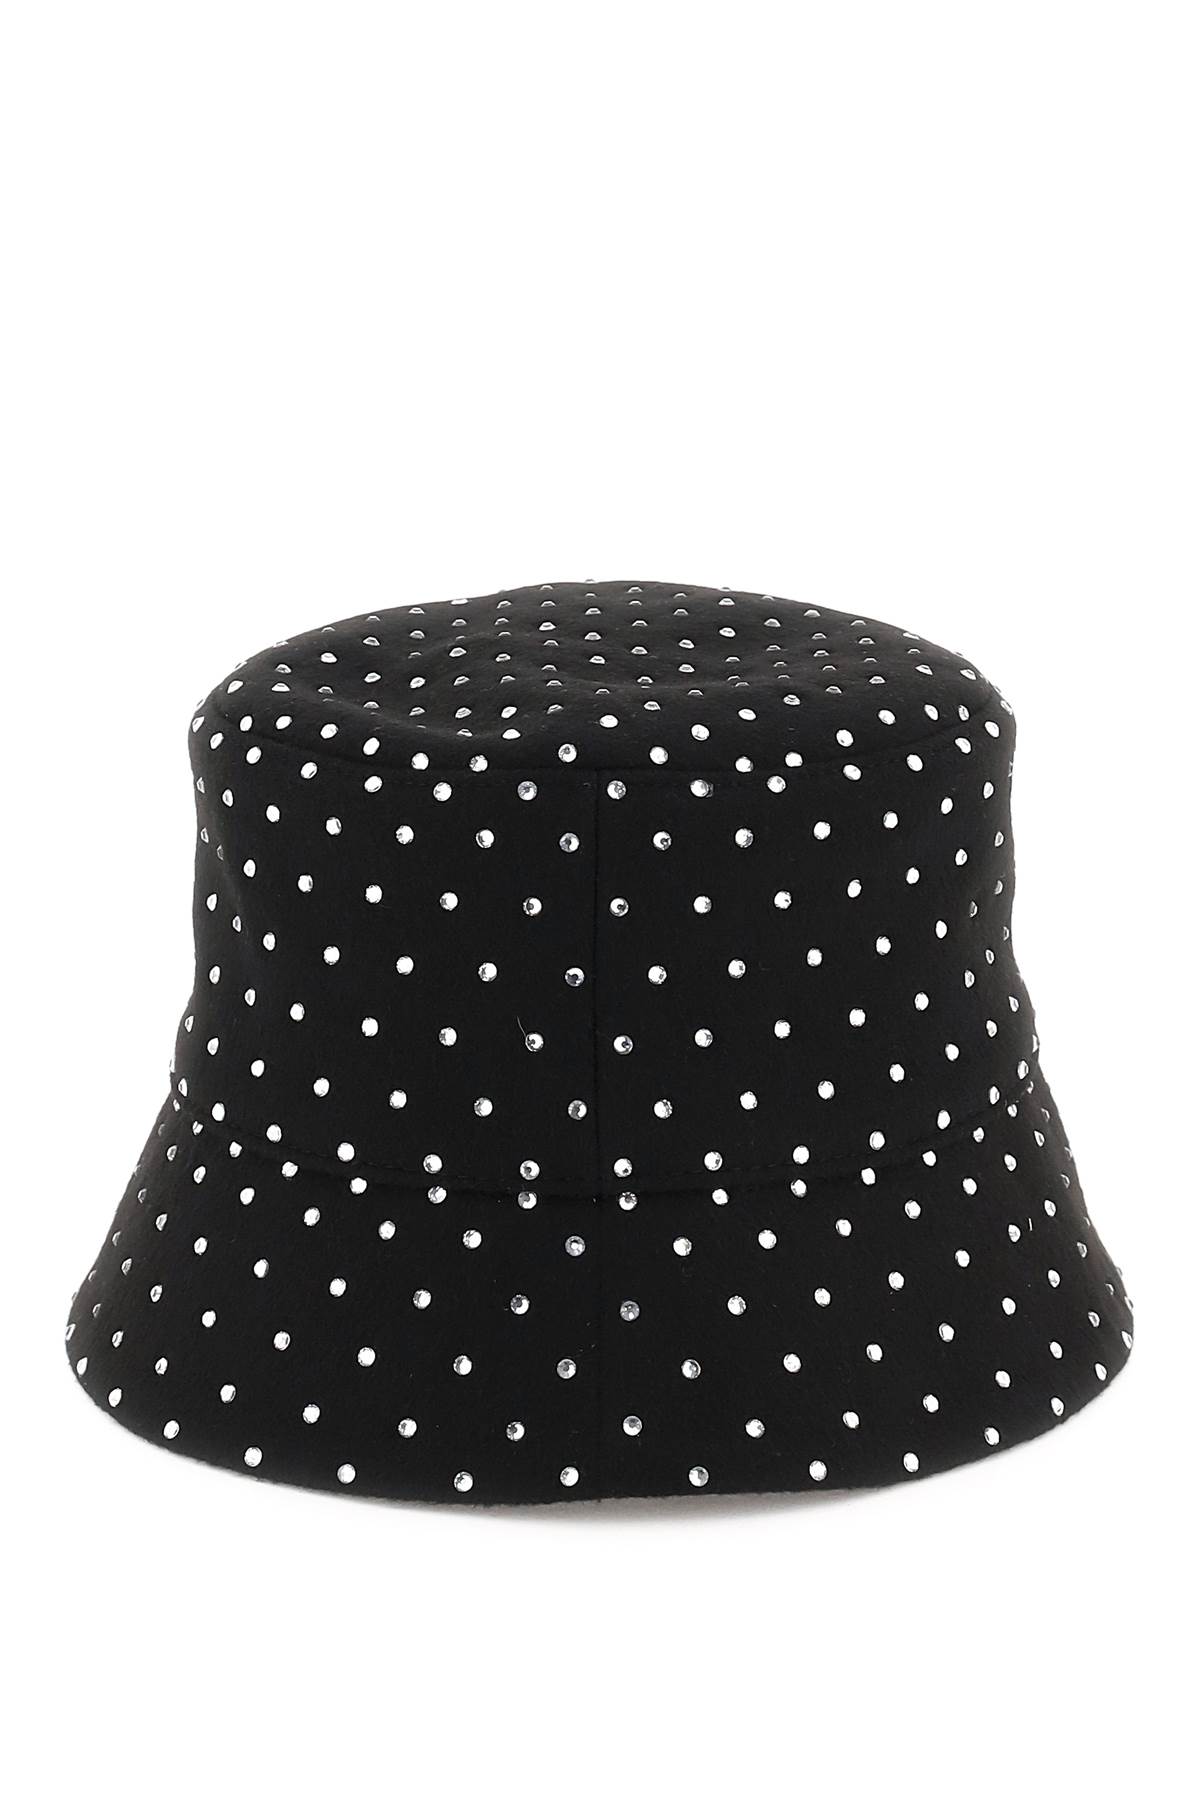 Shop Ruslan Baginskiy Bucket Hat With Rhinestones In Black (black)